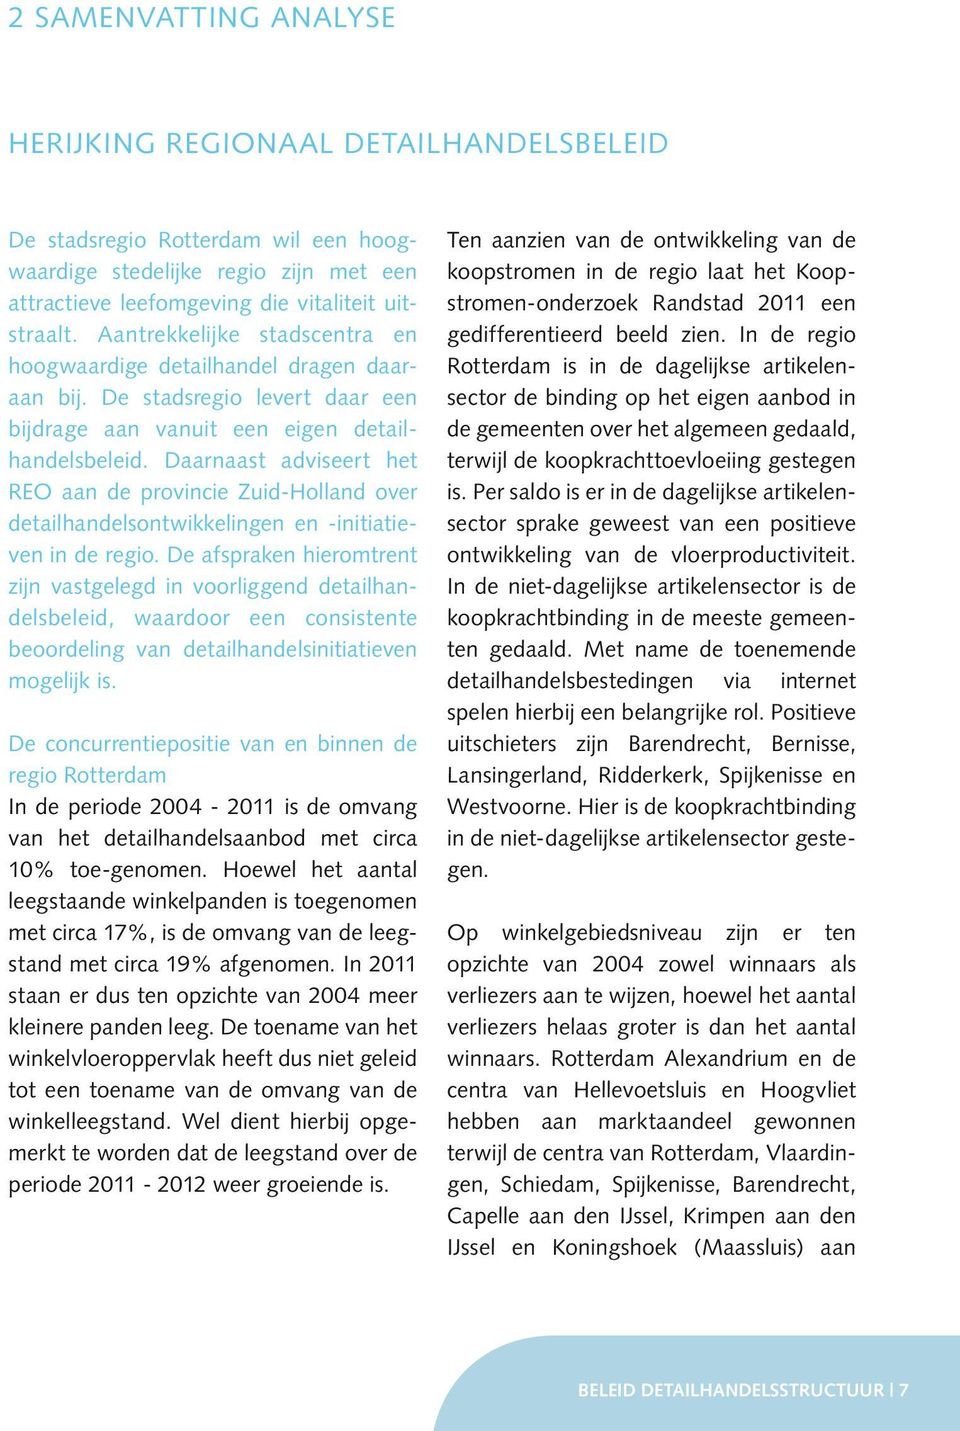 Daarnaast adviseert het REO aan de provincie Zuid-Holland over detail handelsontwikkelingen en -initiatieven in de regio.